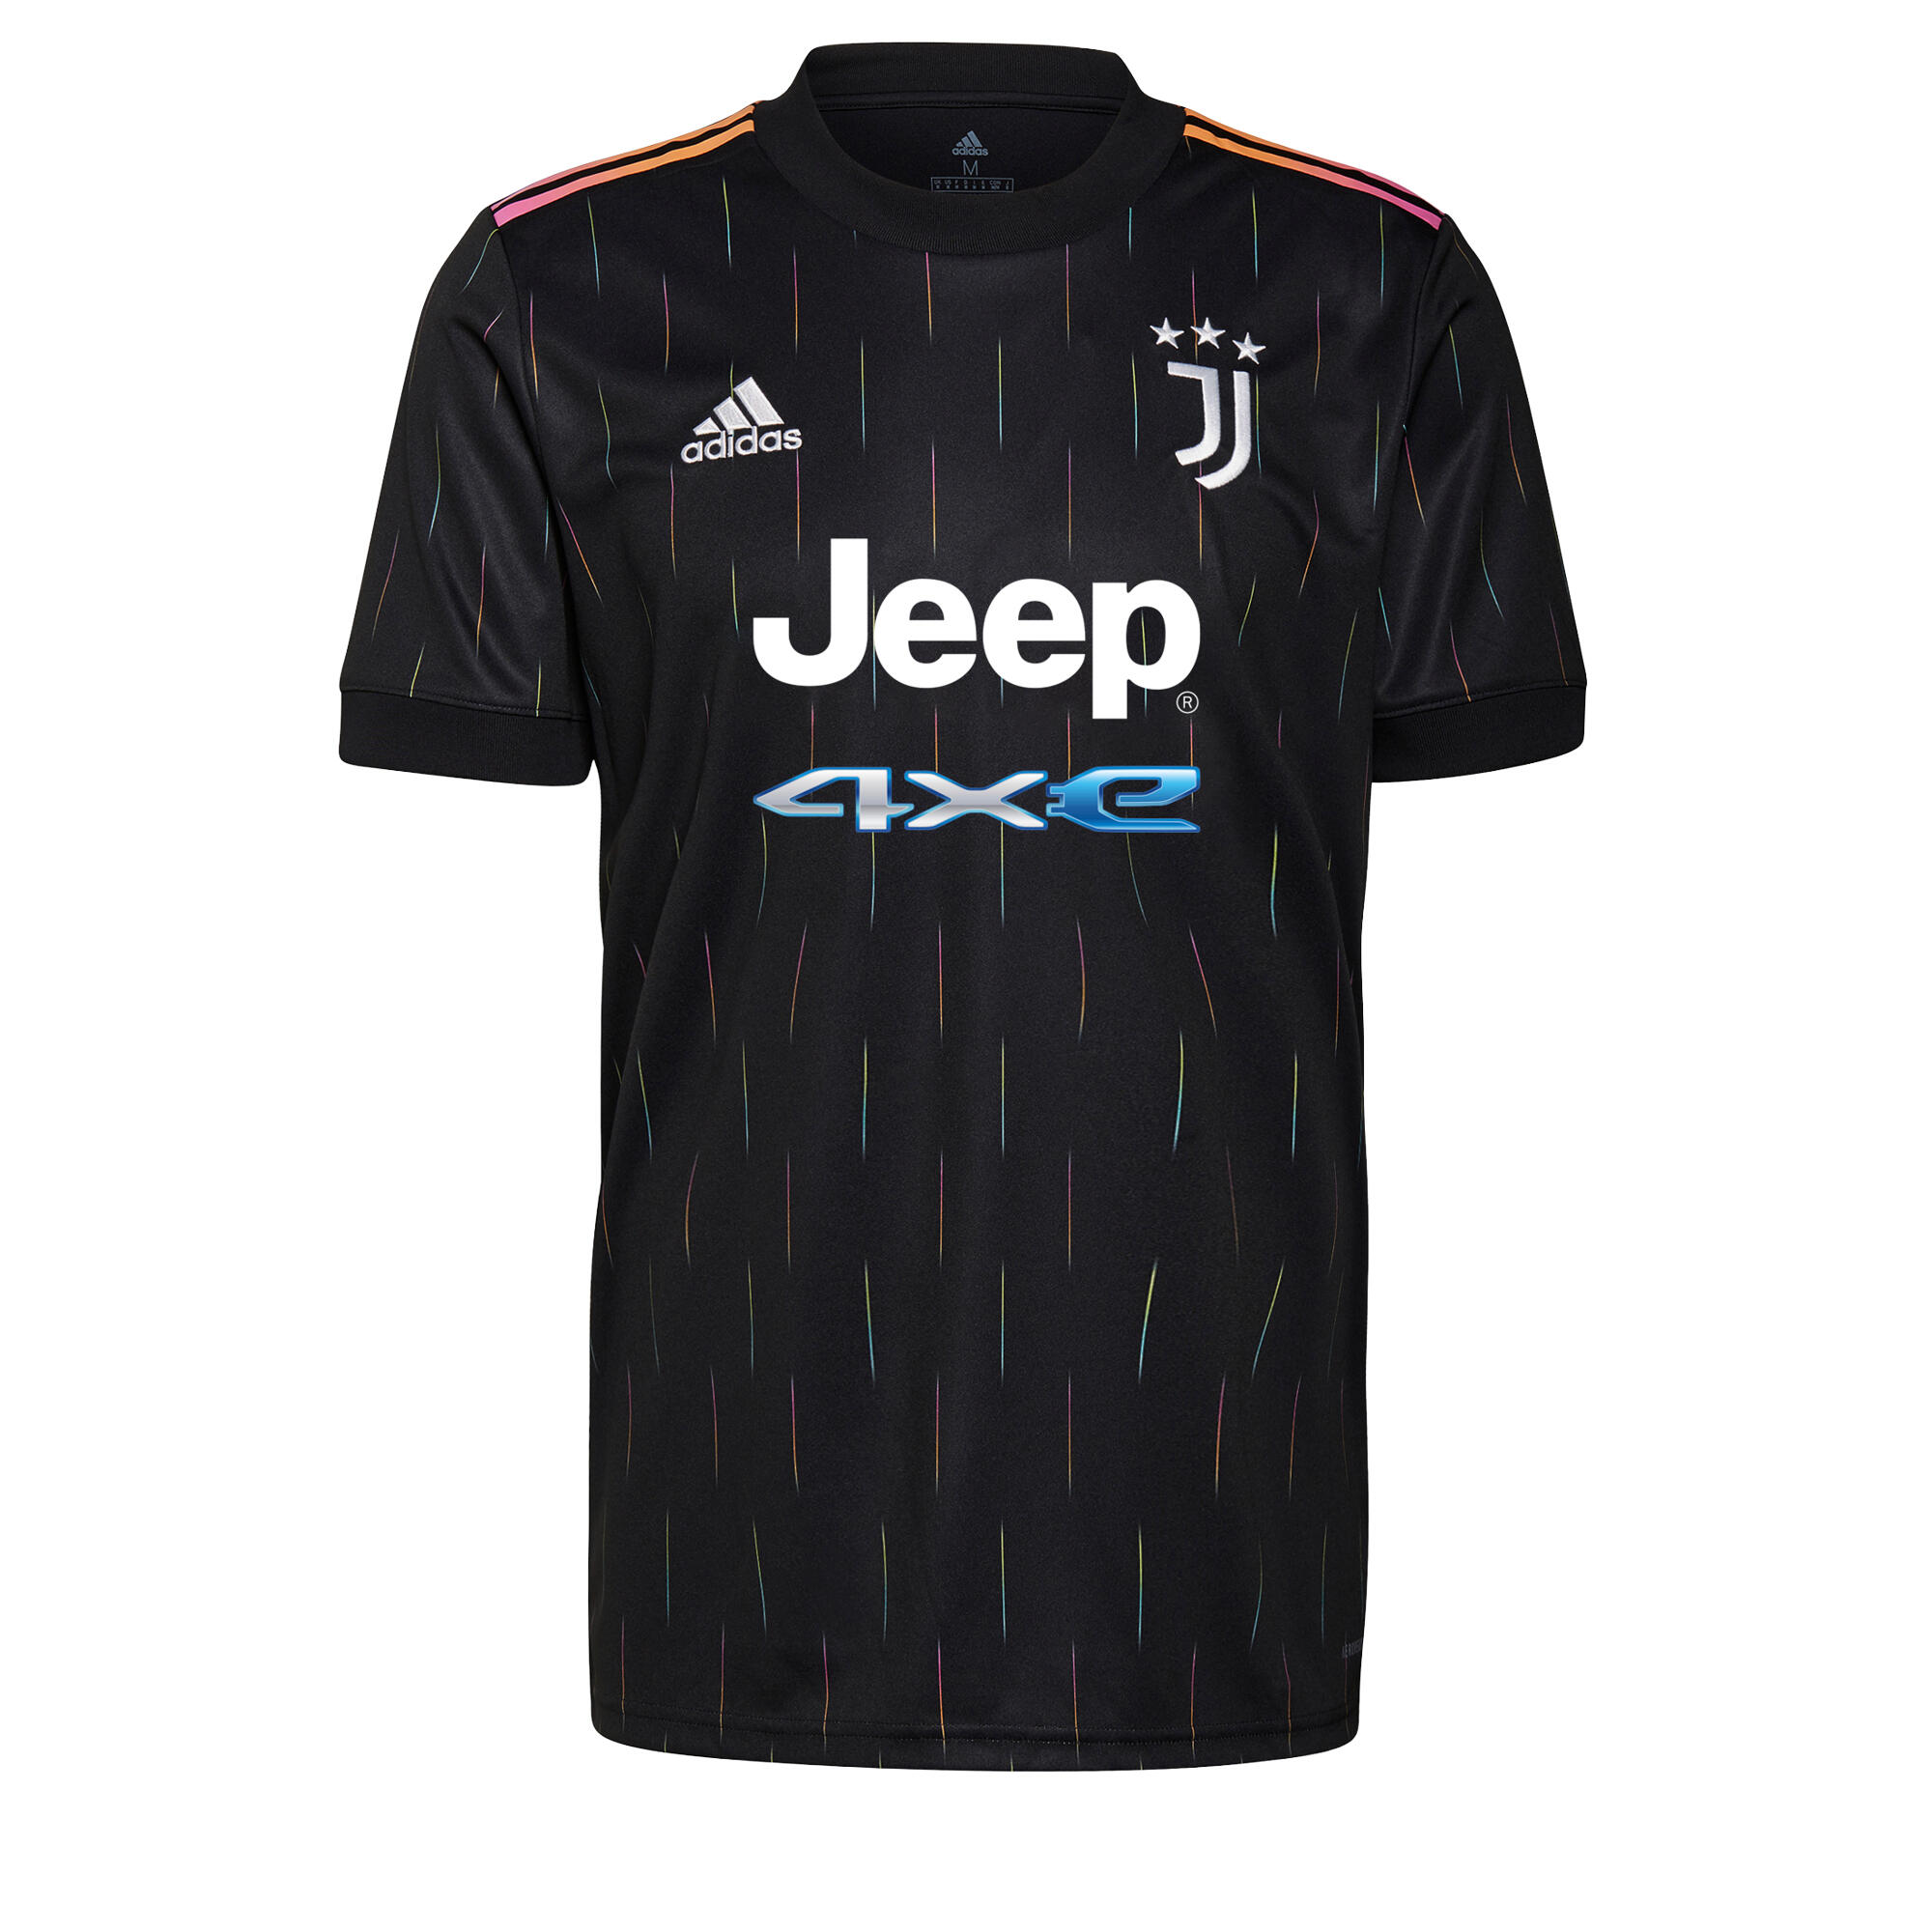 ADIDAS Adult Football Shirt - Juventus Away 21/22